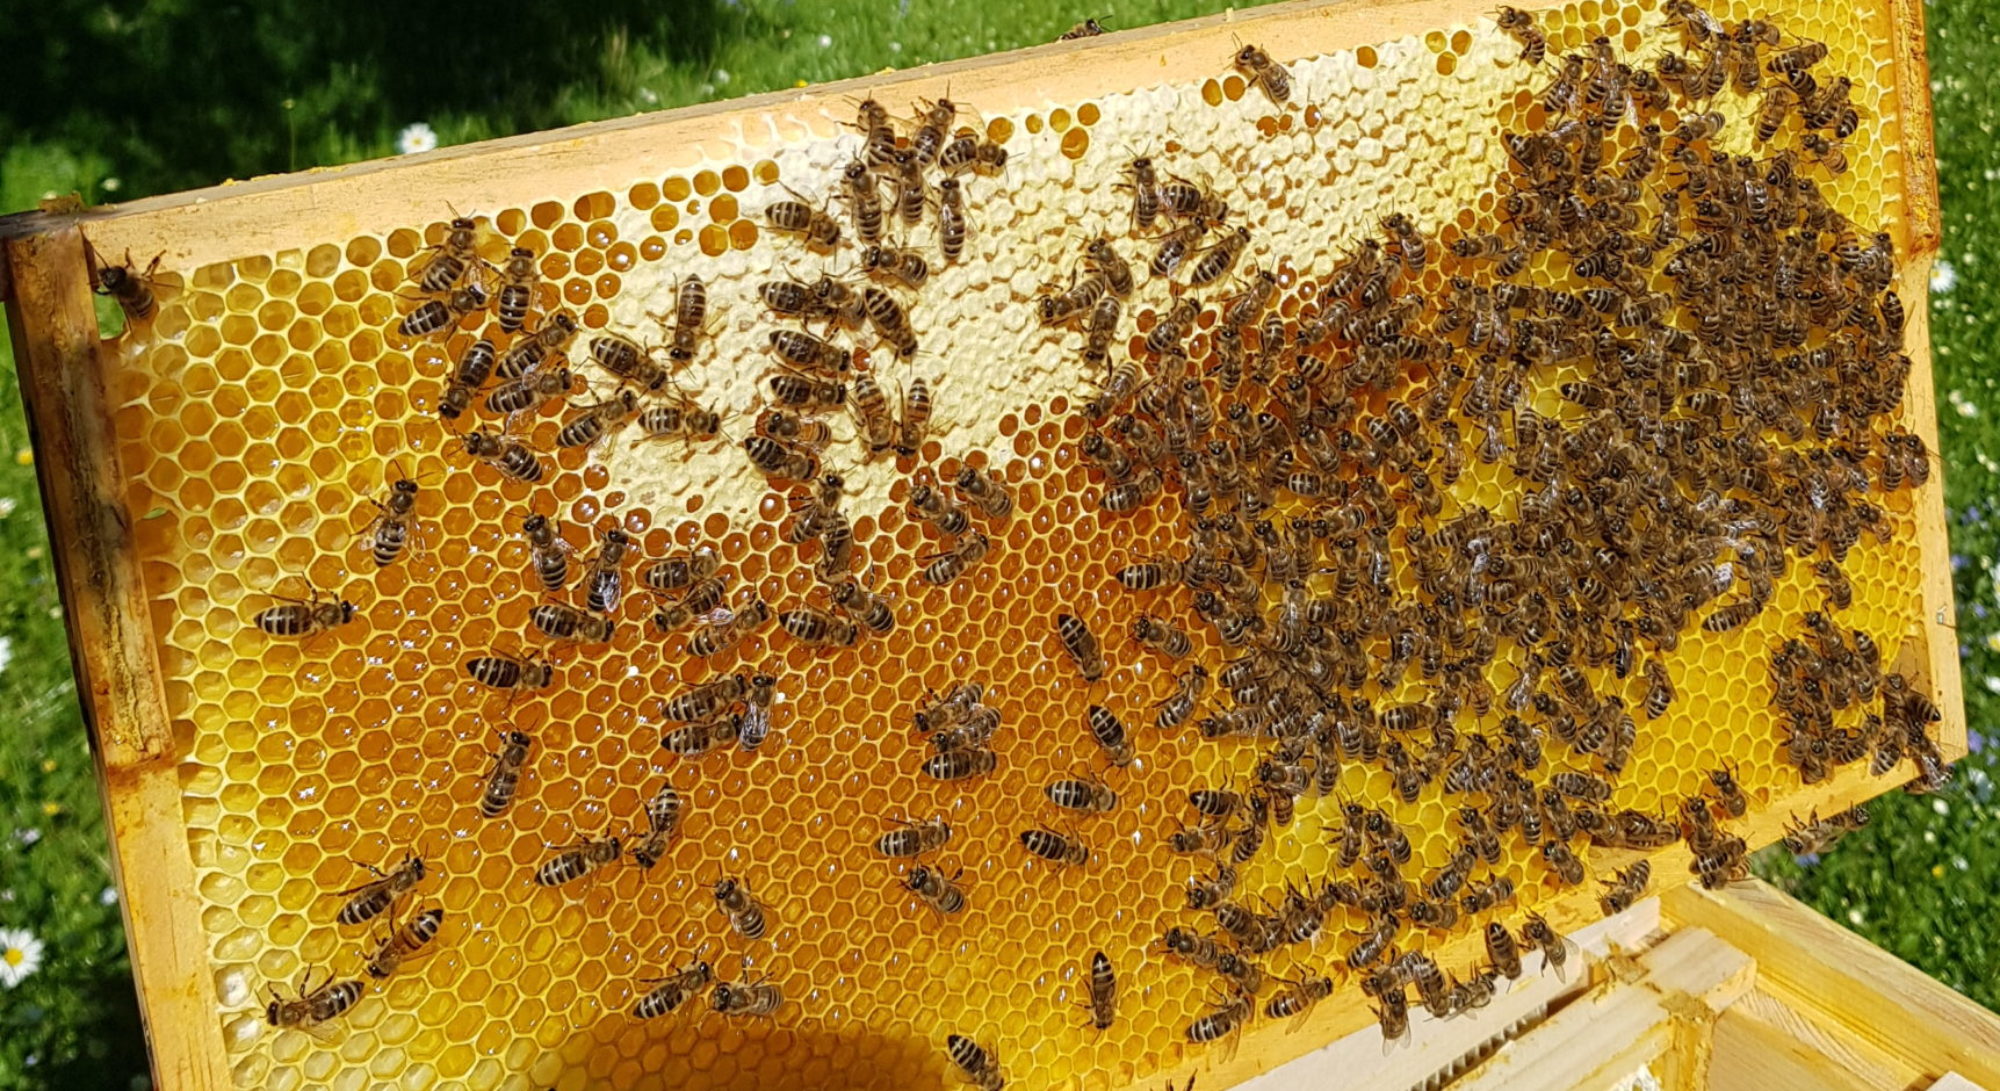 Honigwabe voller Honig und mit Bienen drauf